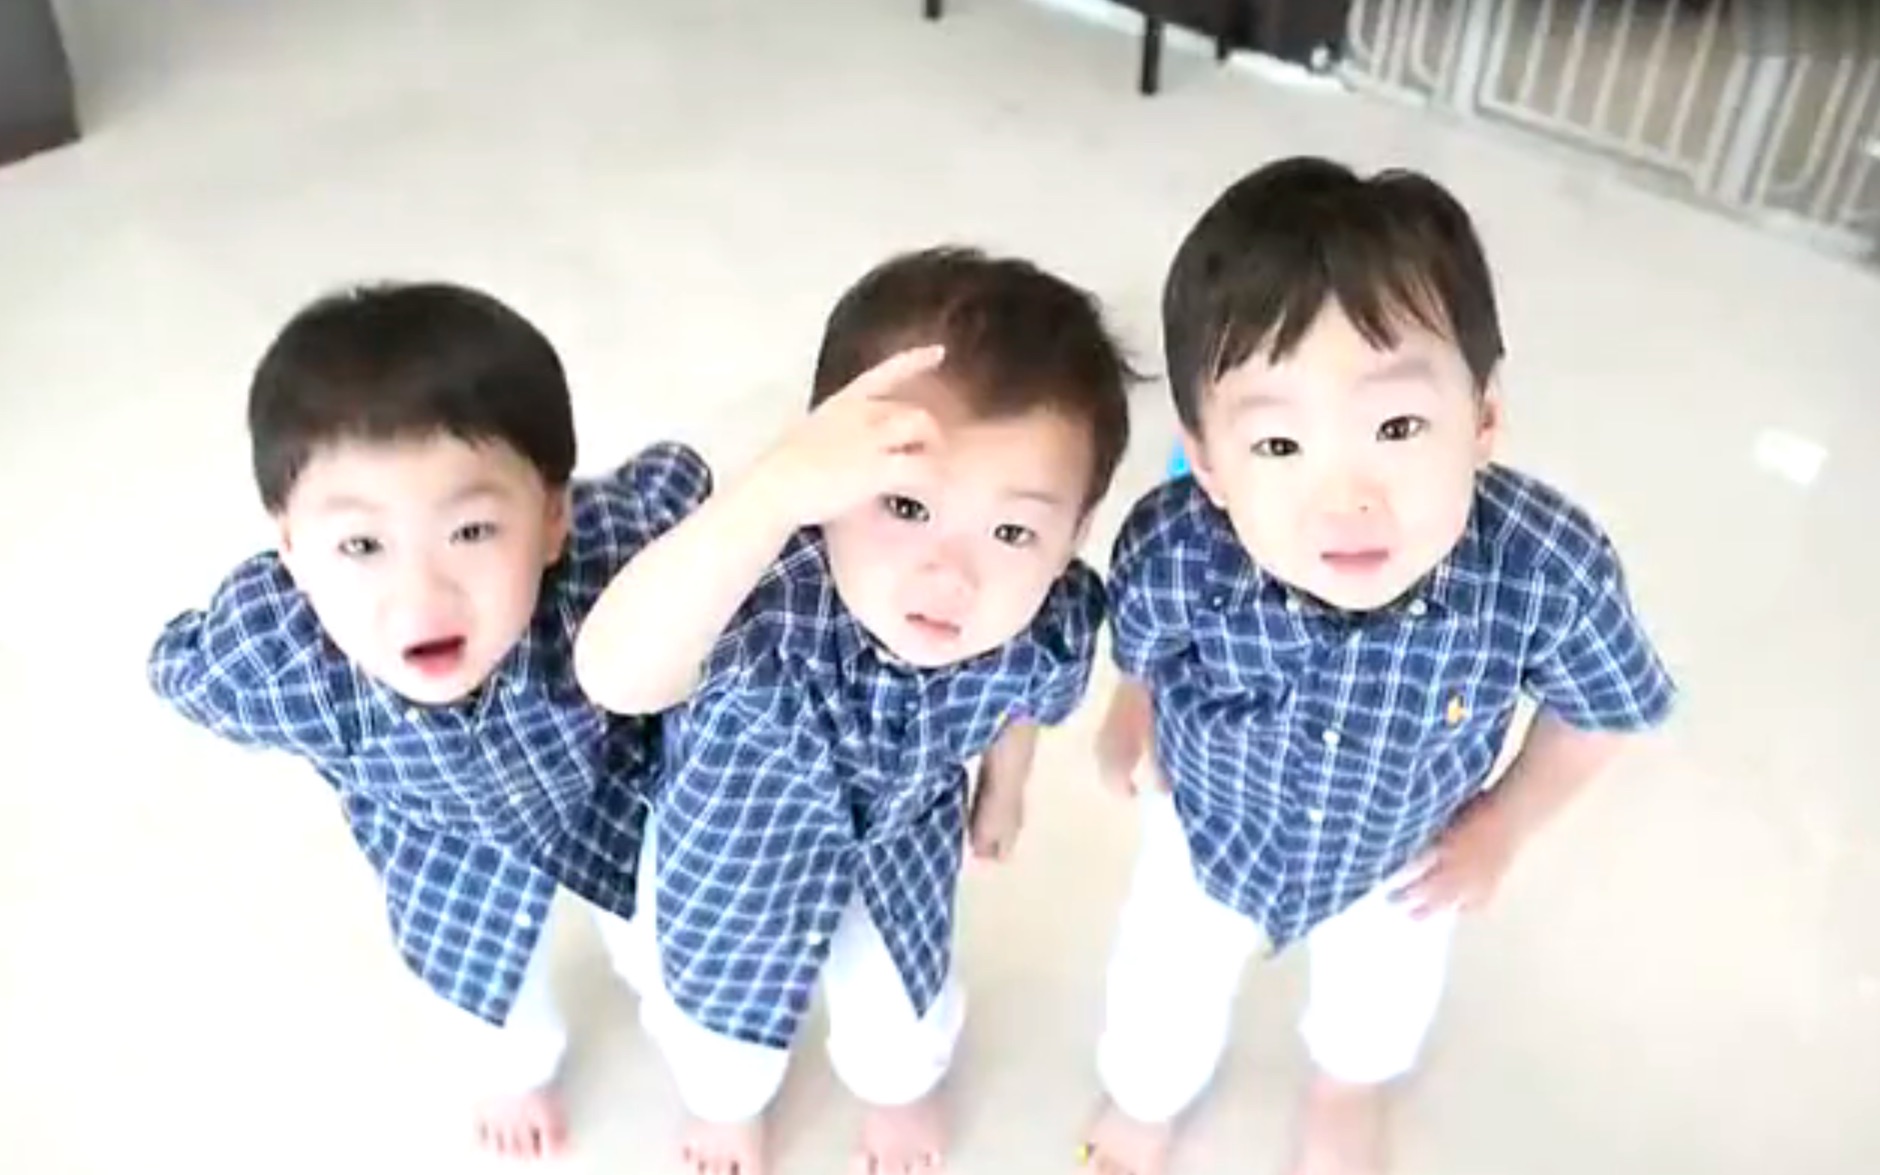 图：韩国宋家三胞胎上小学 新款表情包出炉可爱炸了。_99女性网